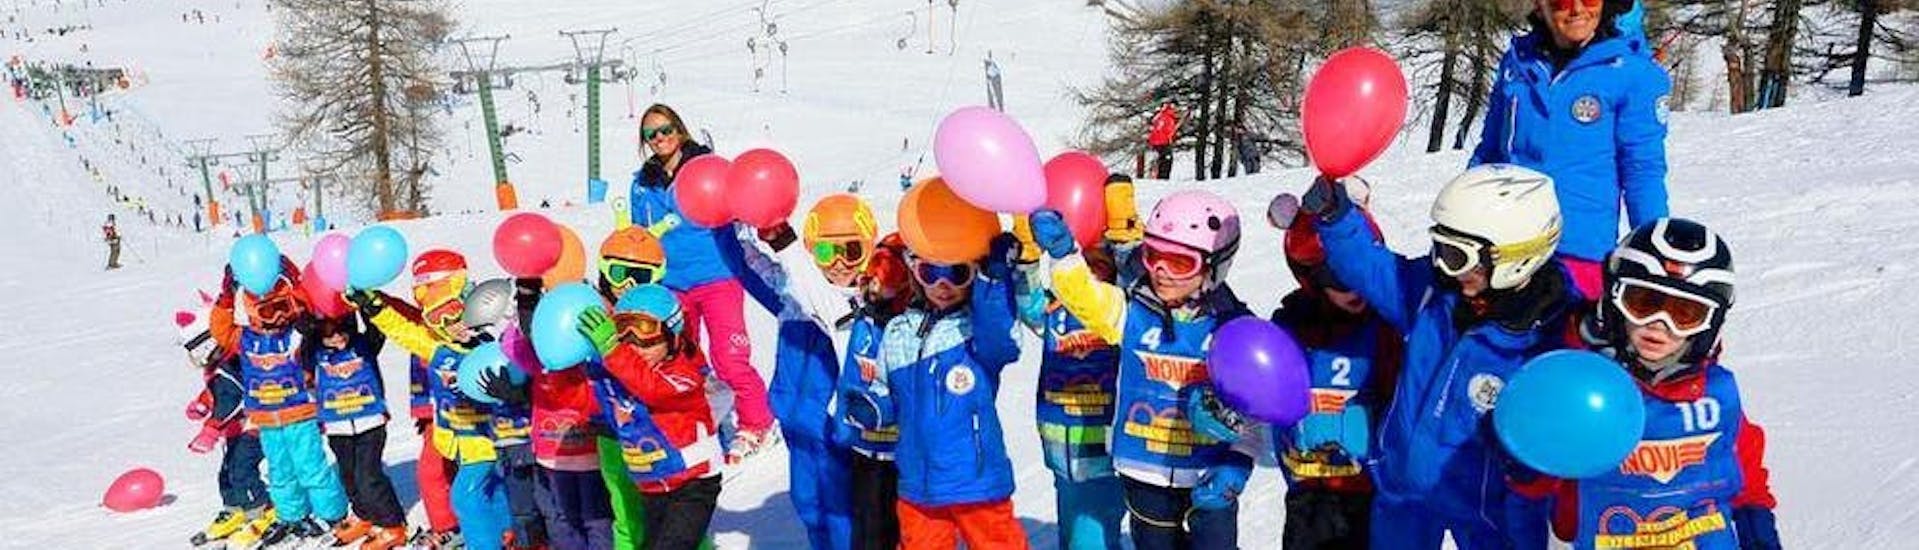 Un groupe d'enfants et leurs moniteurs de ski de l'école de ski Scuola di Sci Olimpionica posent pour une photo au sommet de la montagne à Sestrières, avant de commencer leur Premier Cours de ski Enfants (5-14 ans).